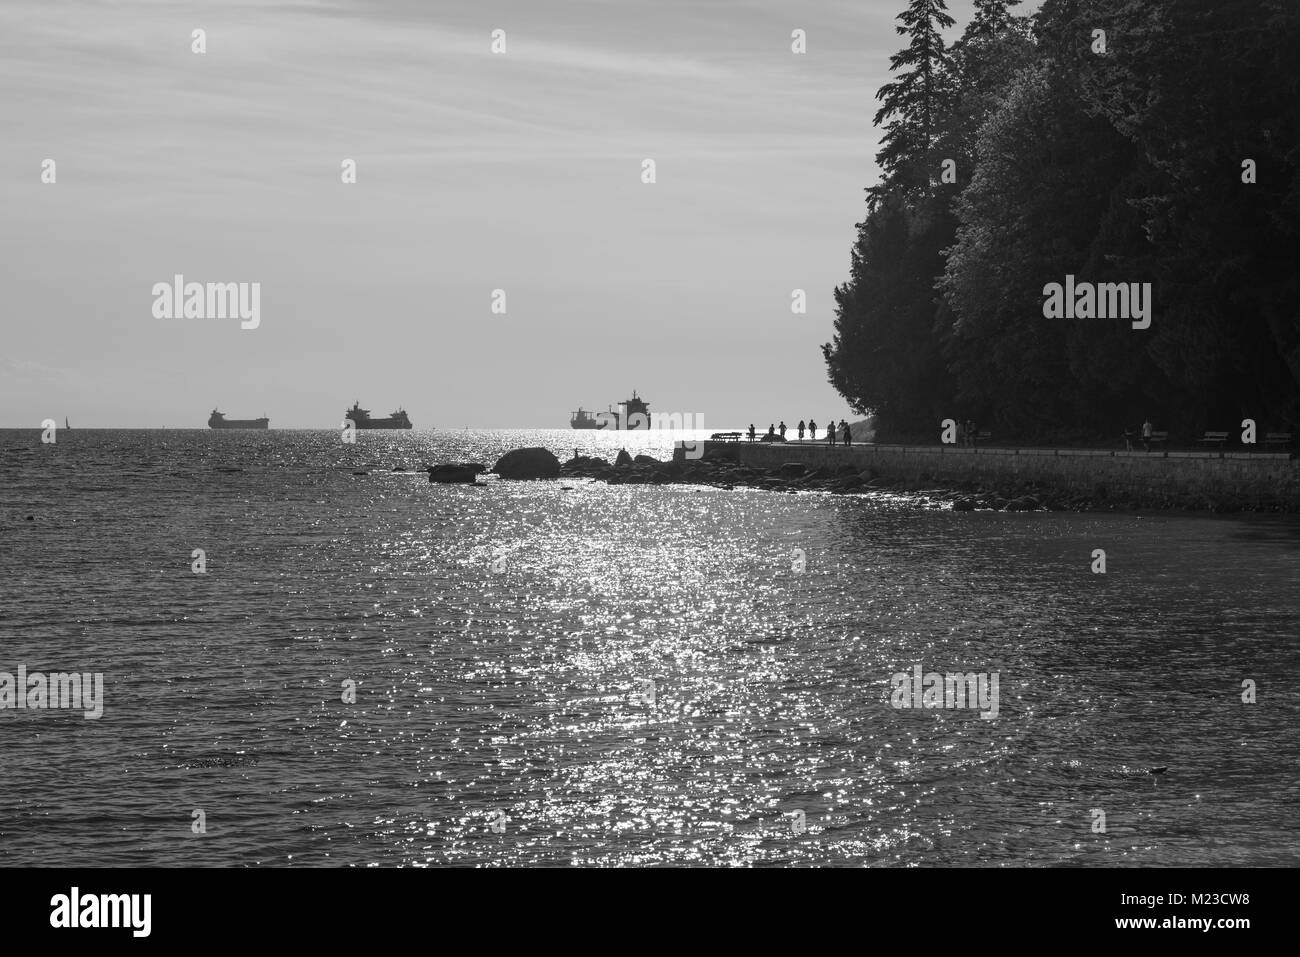 Vancouver, British Columbia, Canada. English Bay e Stanley Park Seawall in una serata estiva in monocromatico. Foto Stock